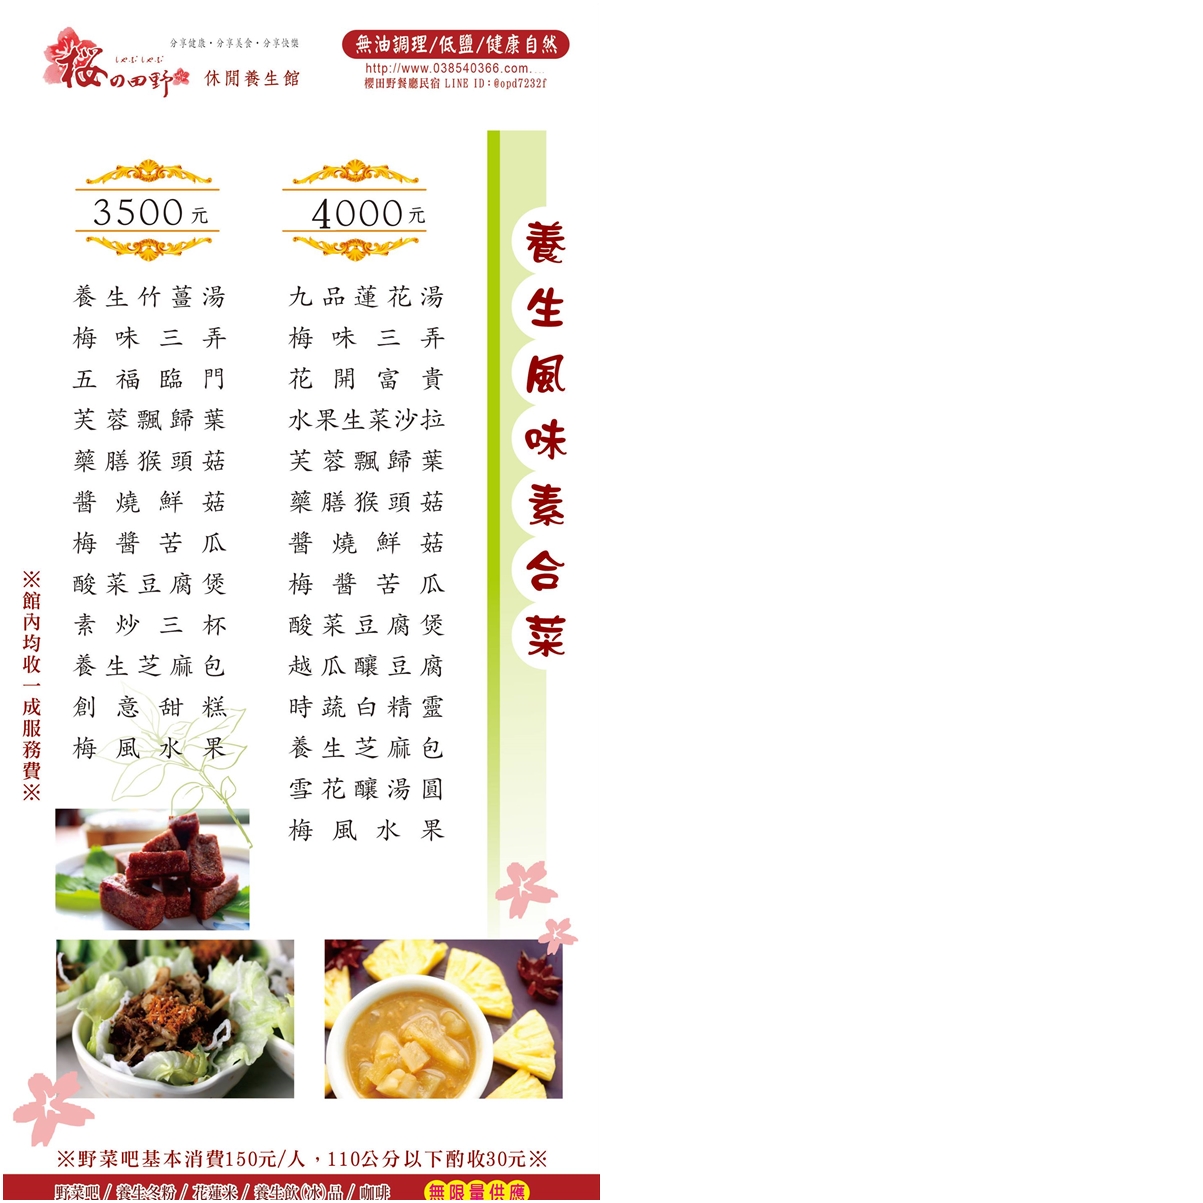 櫻田野休閒養生館 菜單